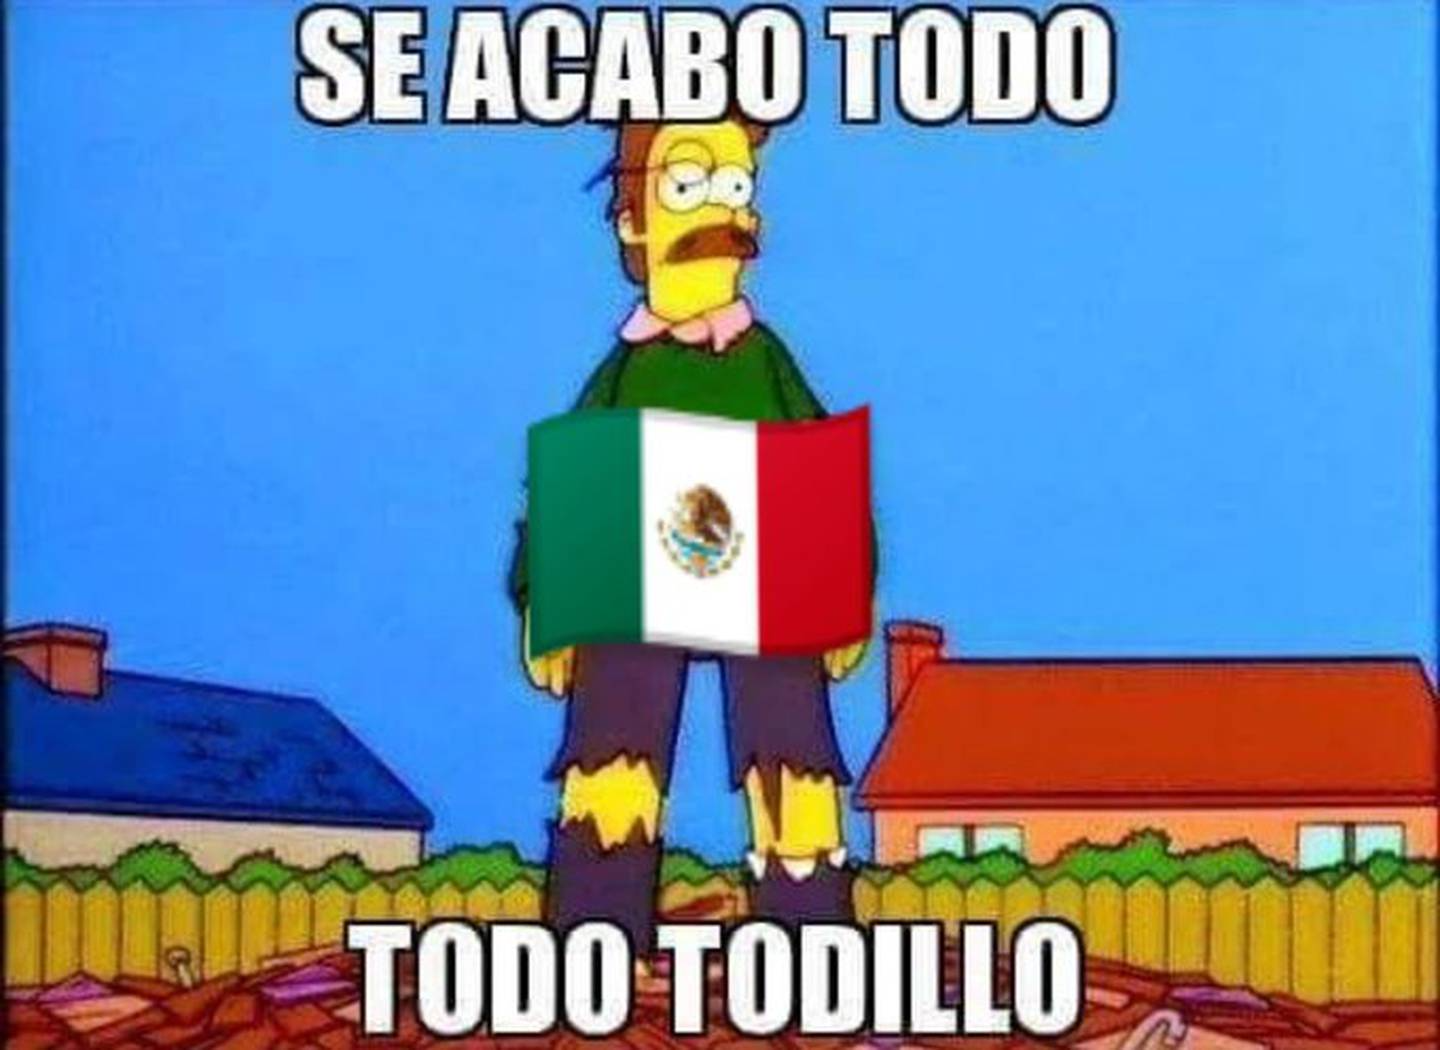 Memes de México en el Mundial Qatar 2022